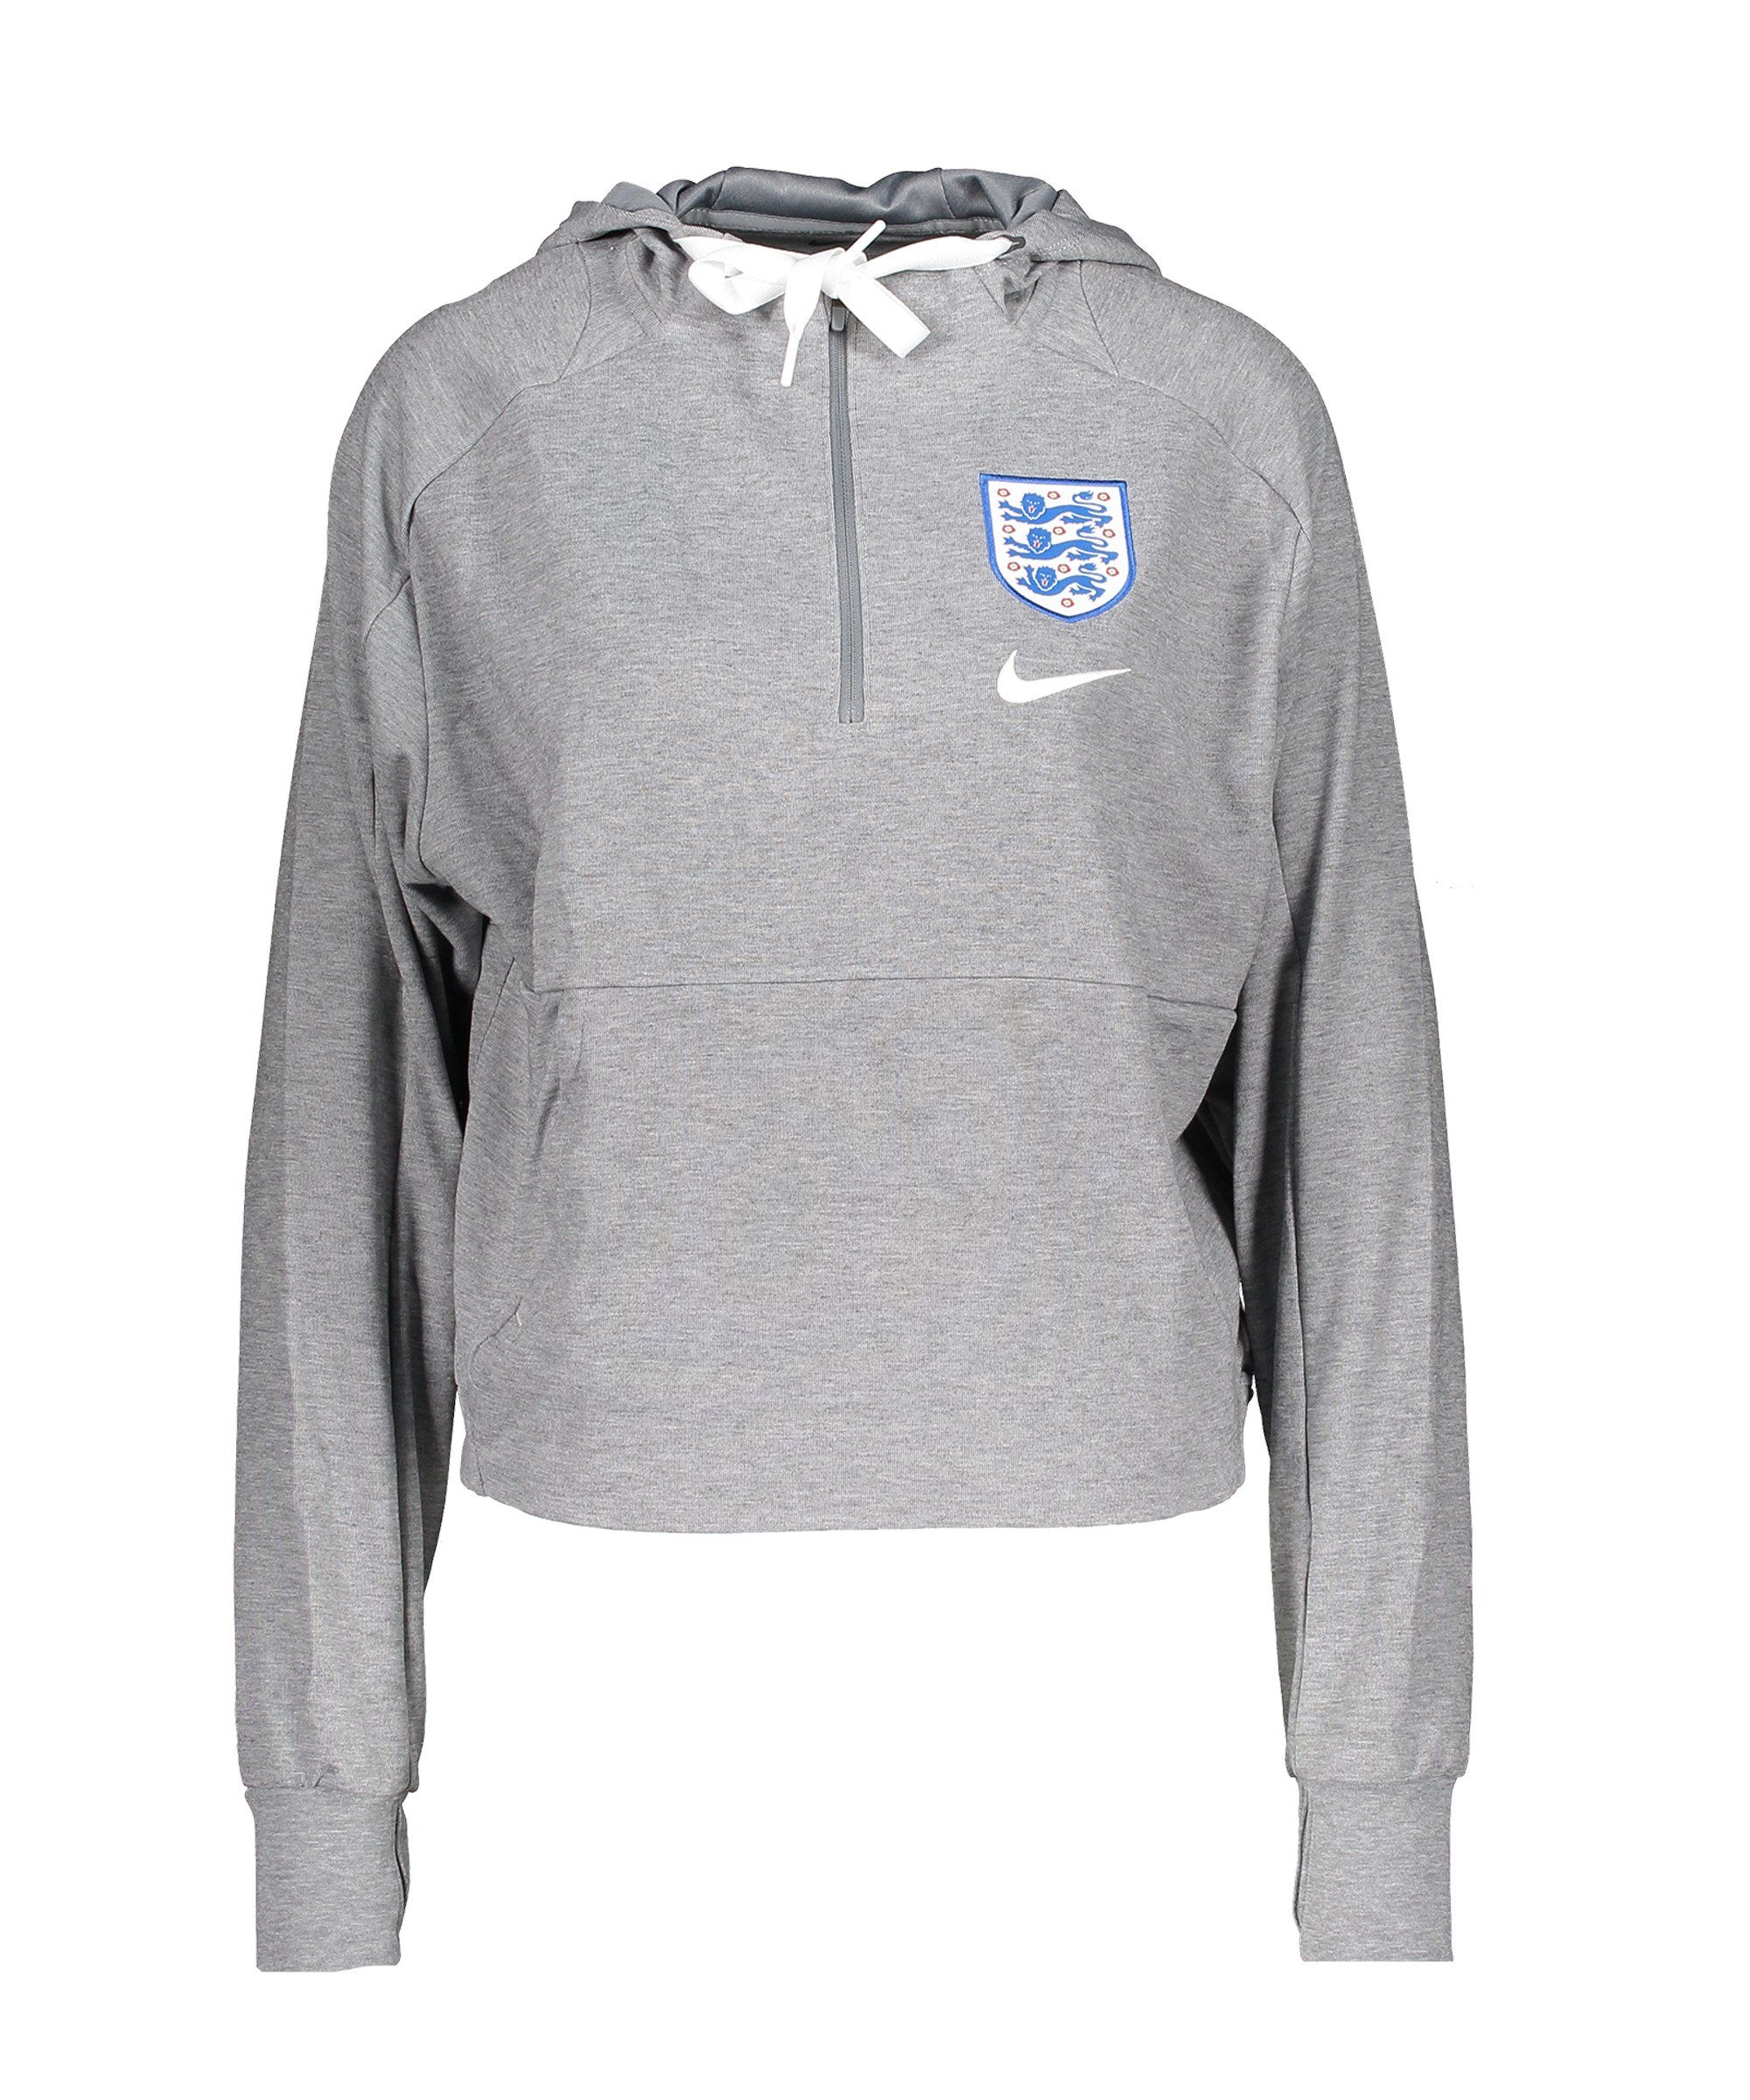 England Sweatshirt Travel Damen Nike Hoody